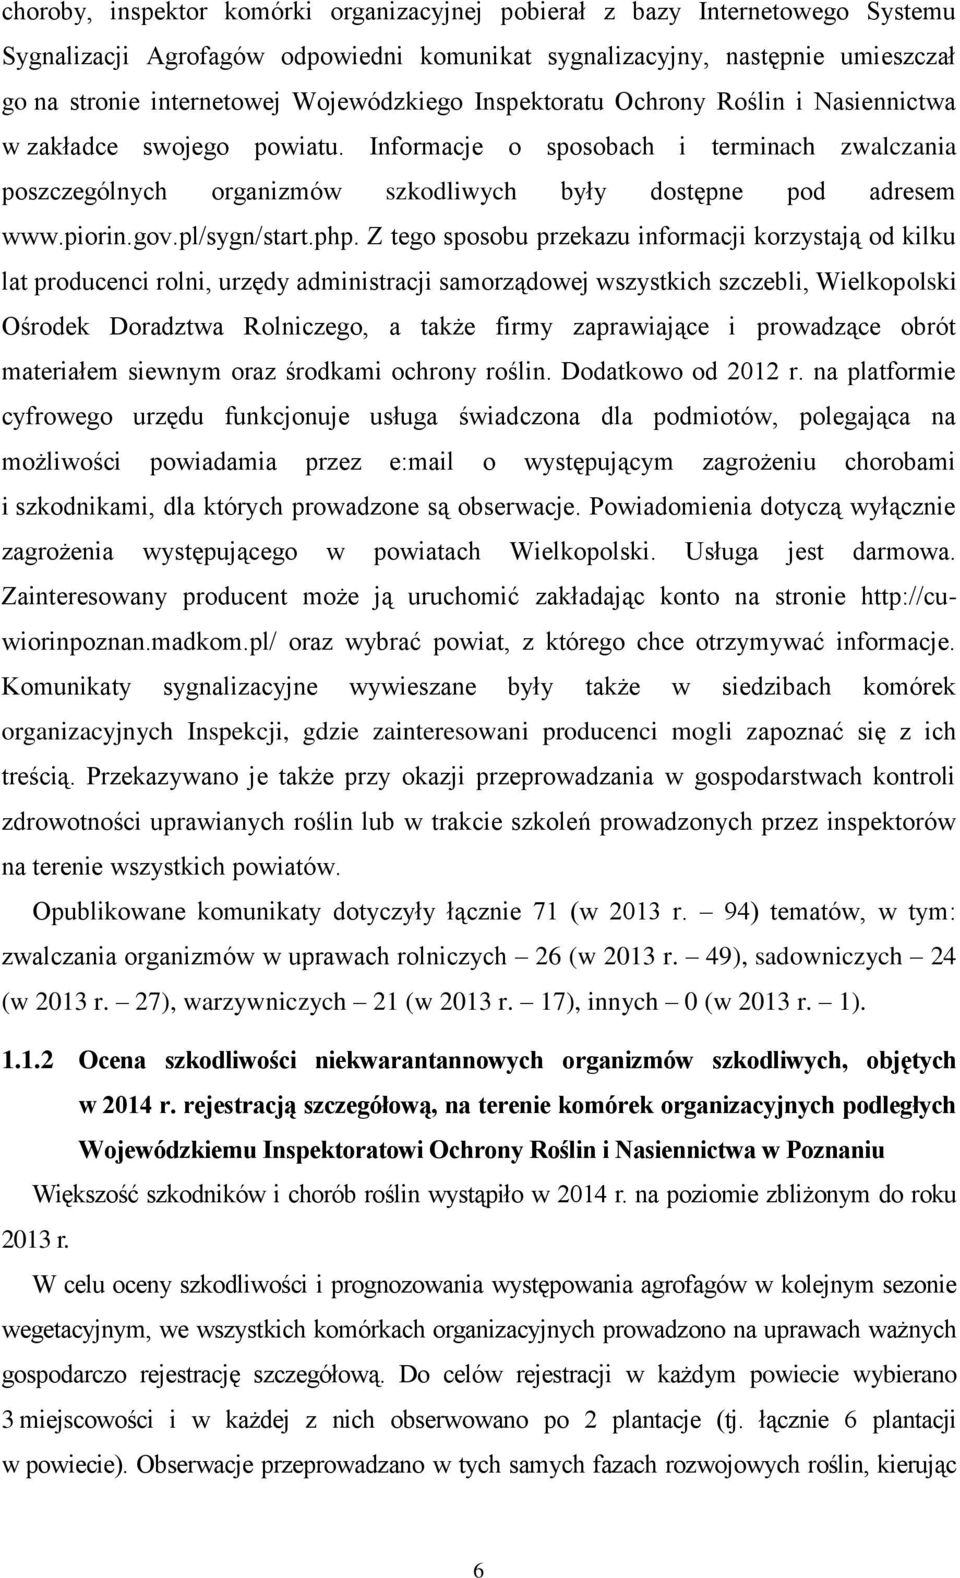 piorin.gov.pl/sygn/start.php.